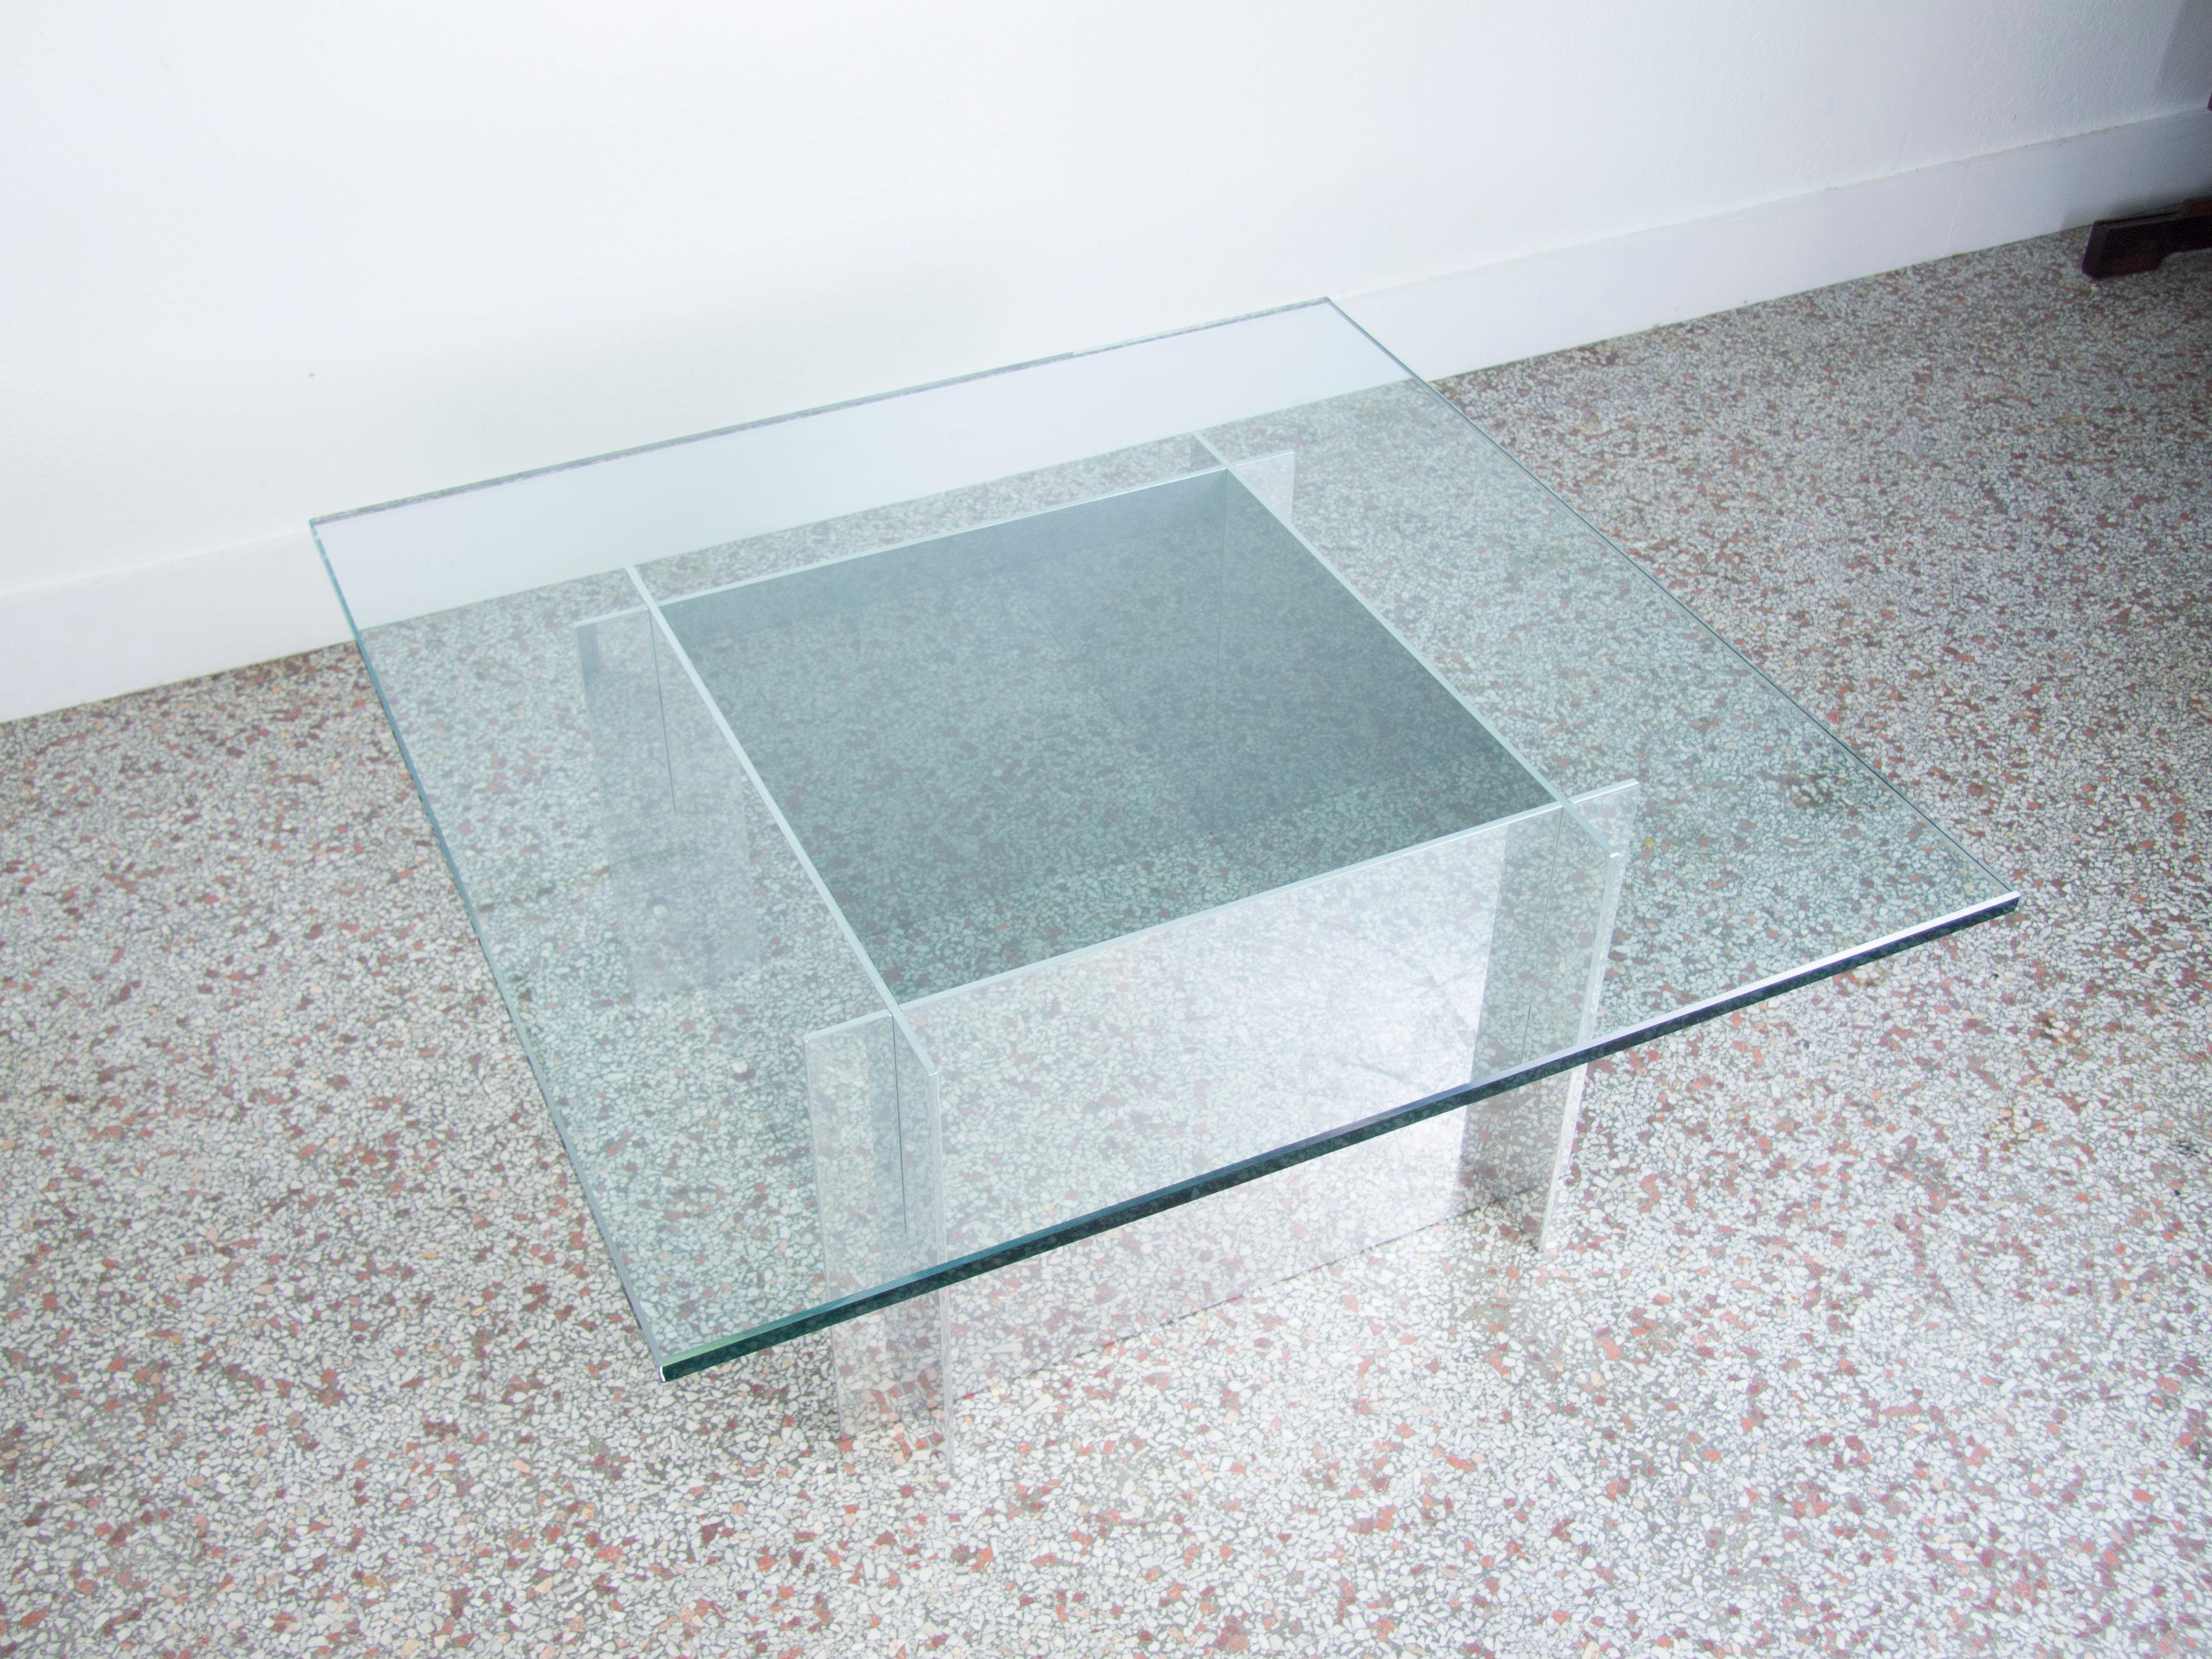 Couchtisch aus Aluminium, entworfen von Paul Mayn für Habitat. Der Tischsockel besteht aus vier Aluminiumplatten, die sich in einer „Knock down“-Form ineinander verschließen und mit einer quadratischen 3/4